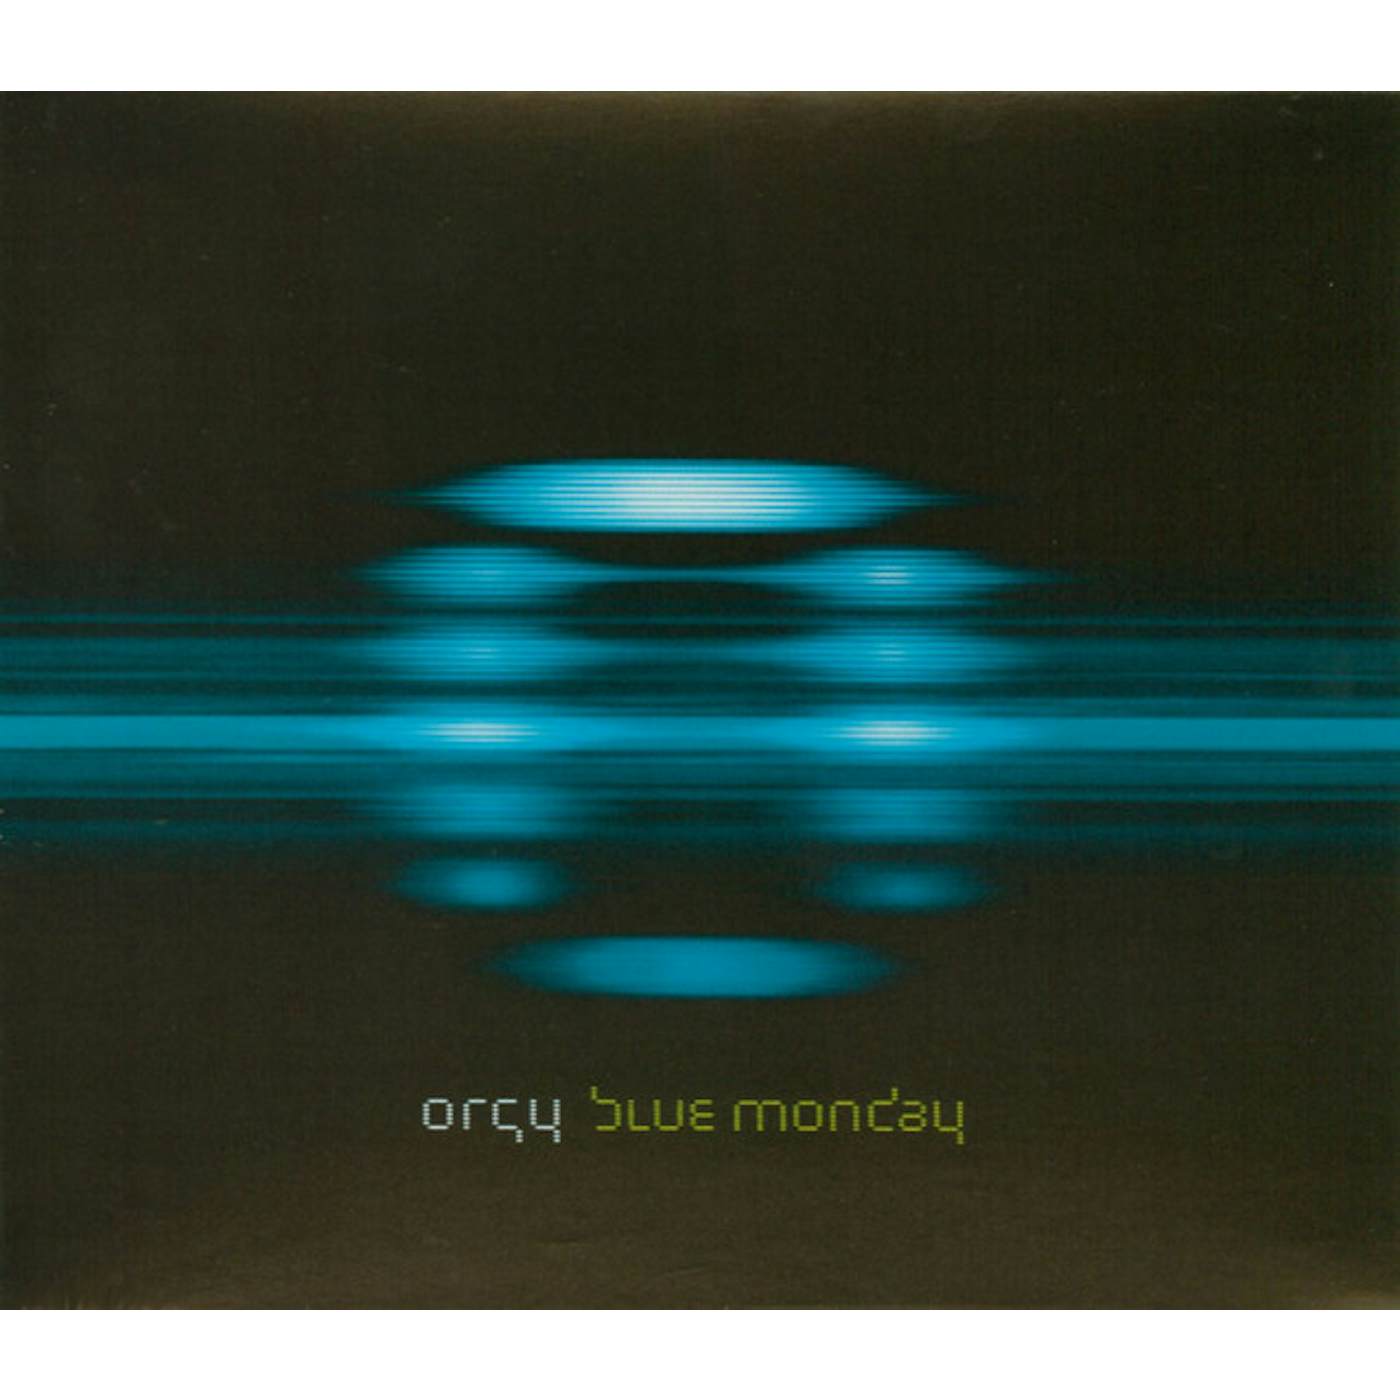 Orgy Blue Monday Vinyl Record